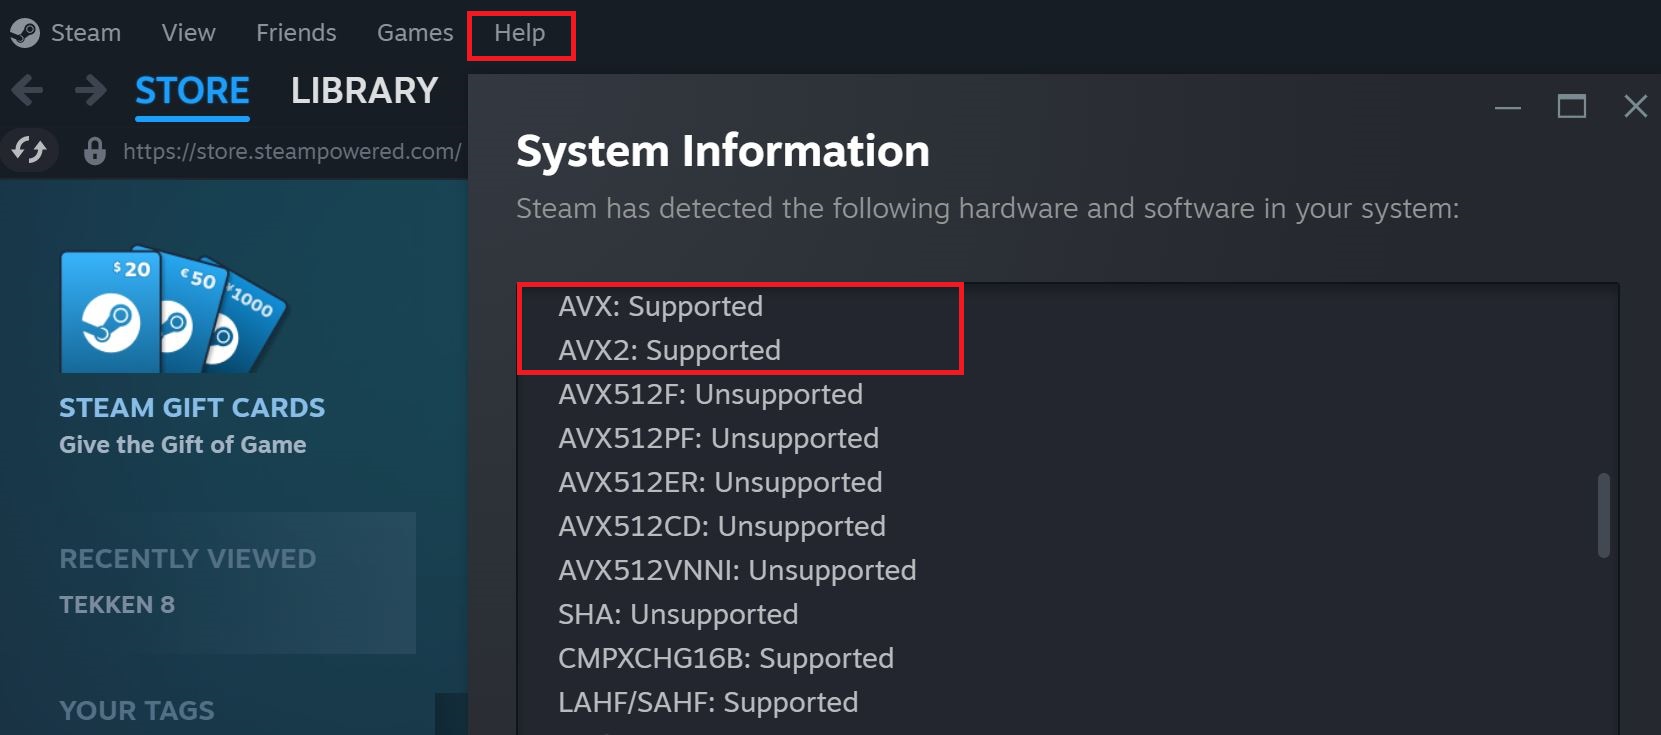 checking for AVX2 Support